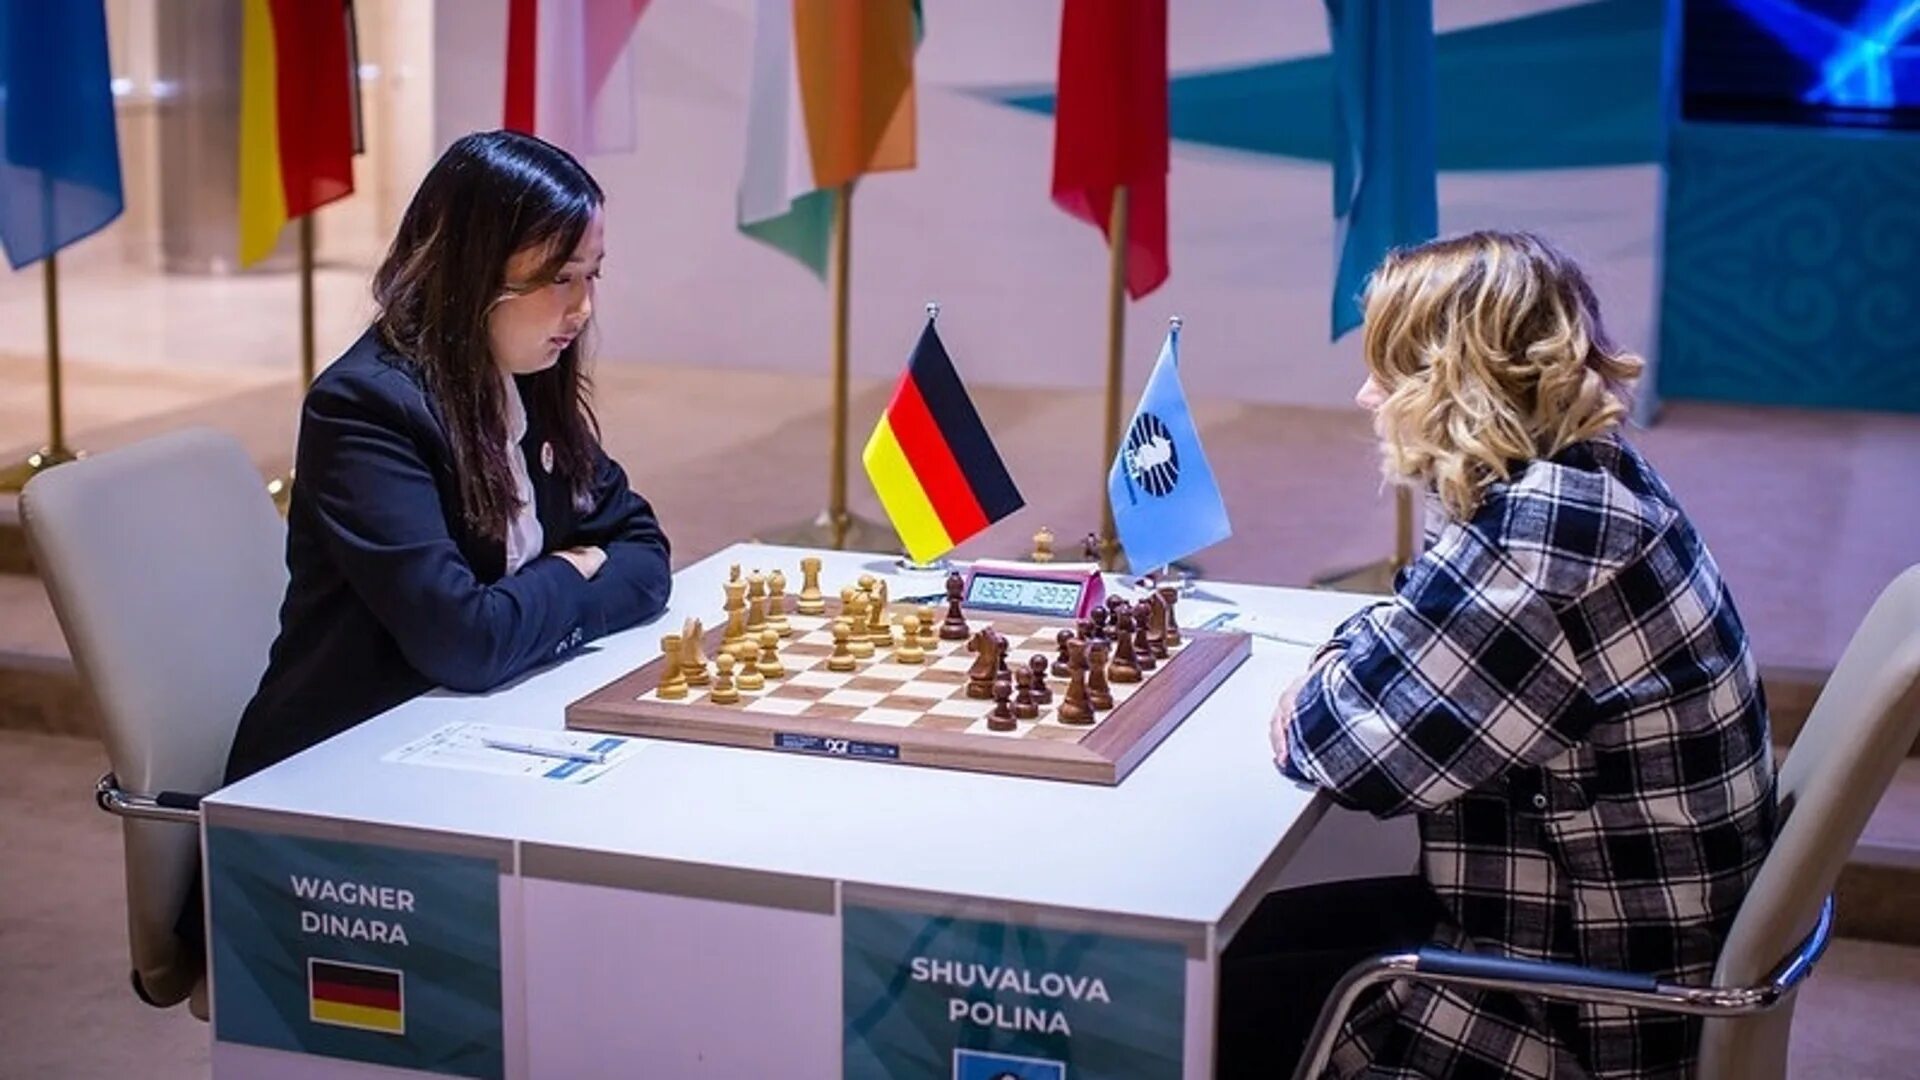 Шахматный турнир в Москве 2022. Россия США шахматы.